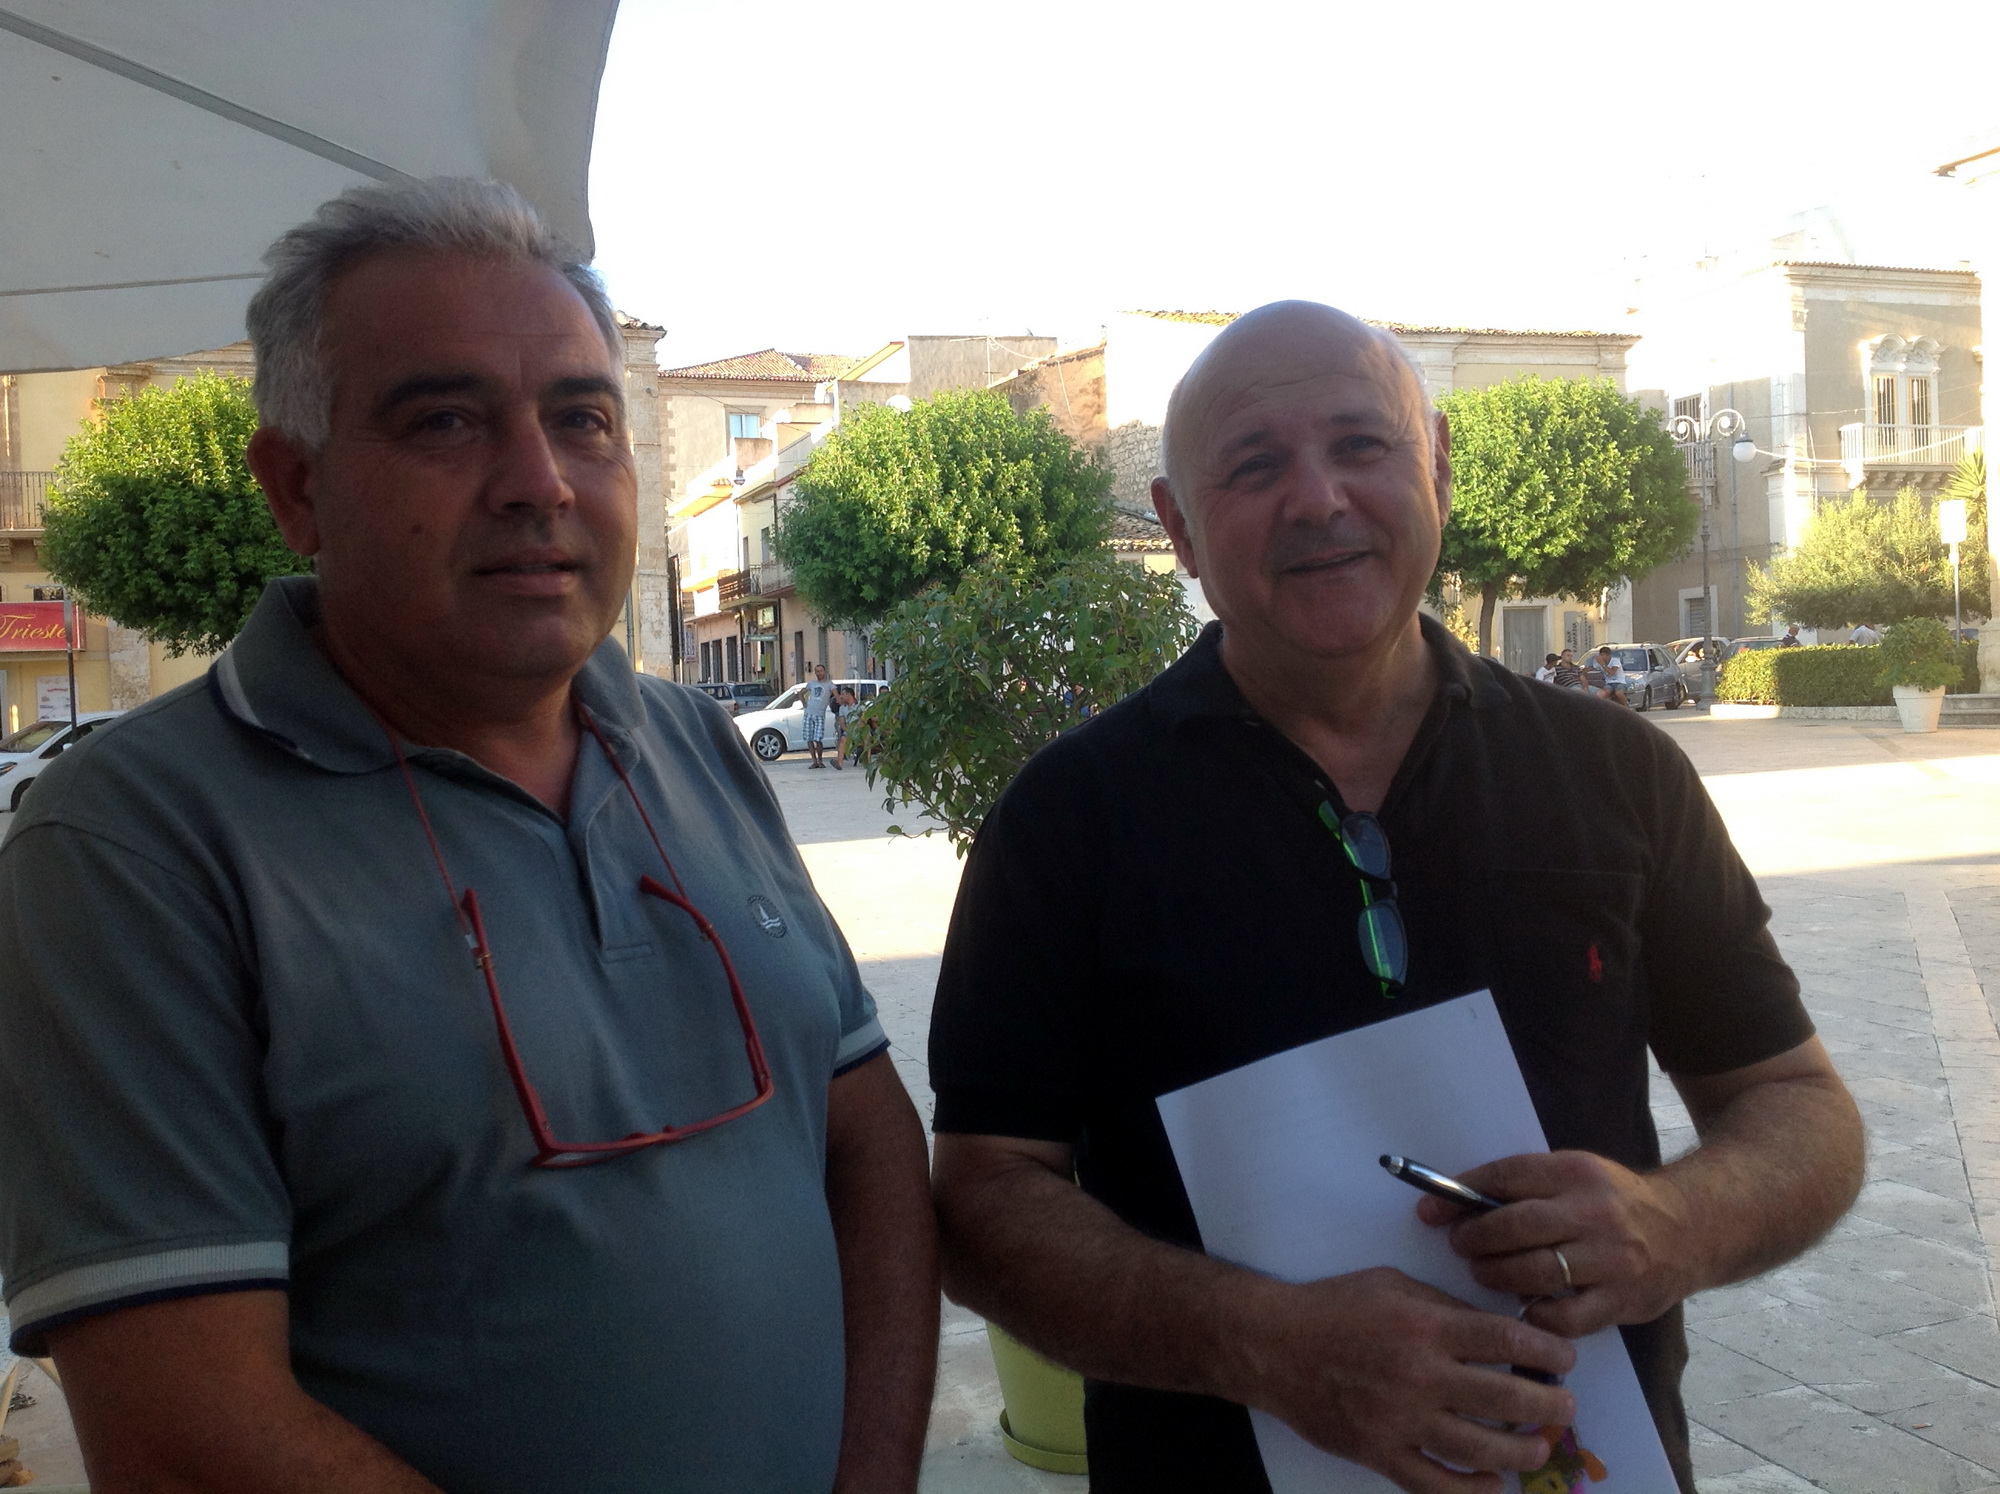  Marchio, Pluchino-Di Marco: “Organismo di gestione e controllo è sparito”